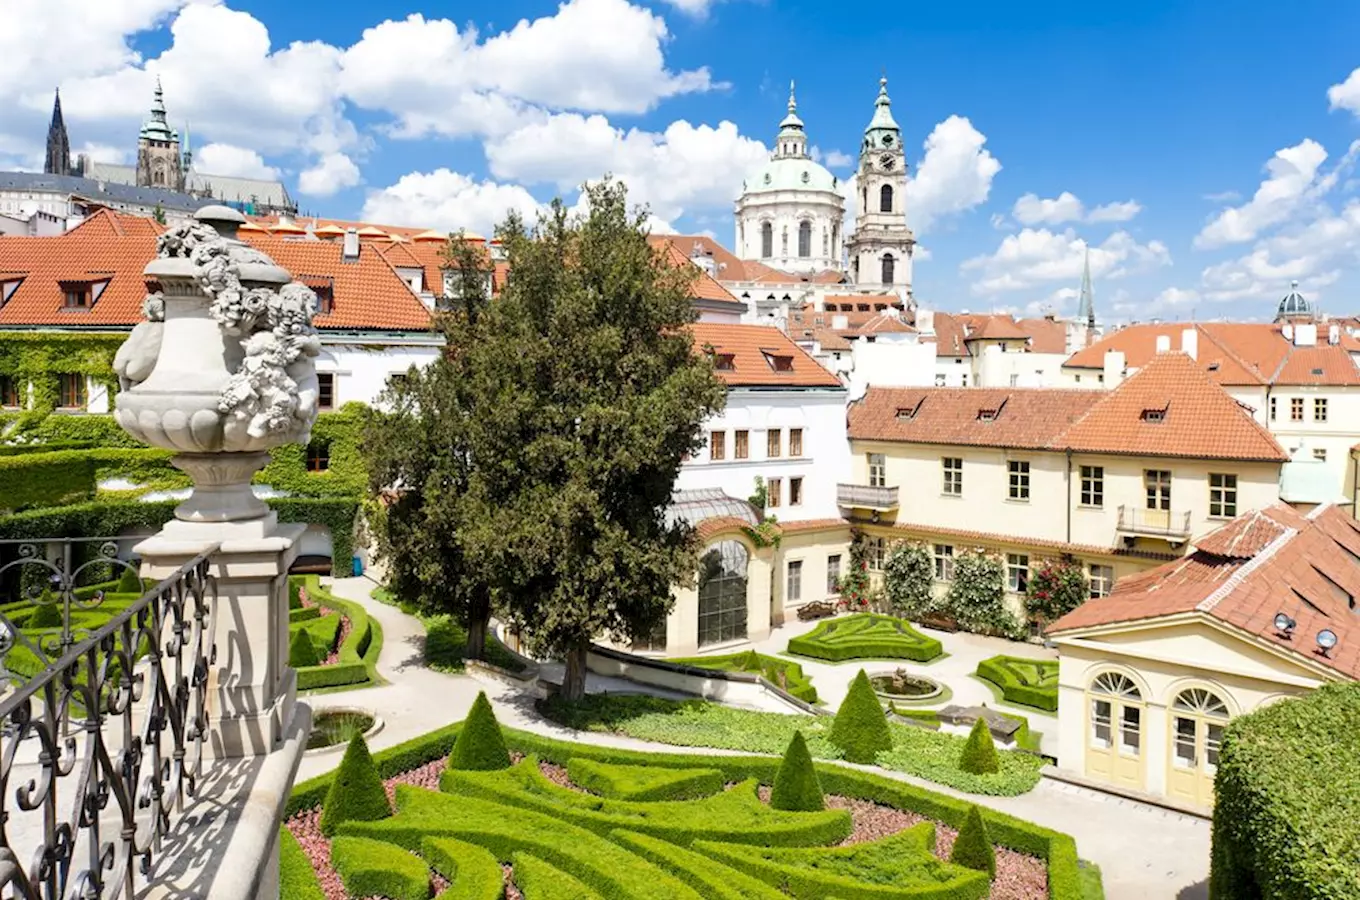 Vrtbovská zahrada v Praze se poprvé letos otevře v pátek 17. dubna